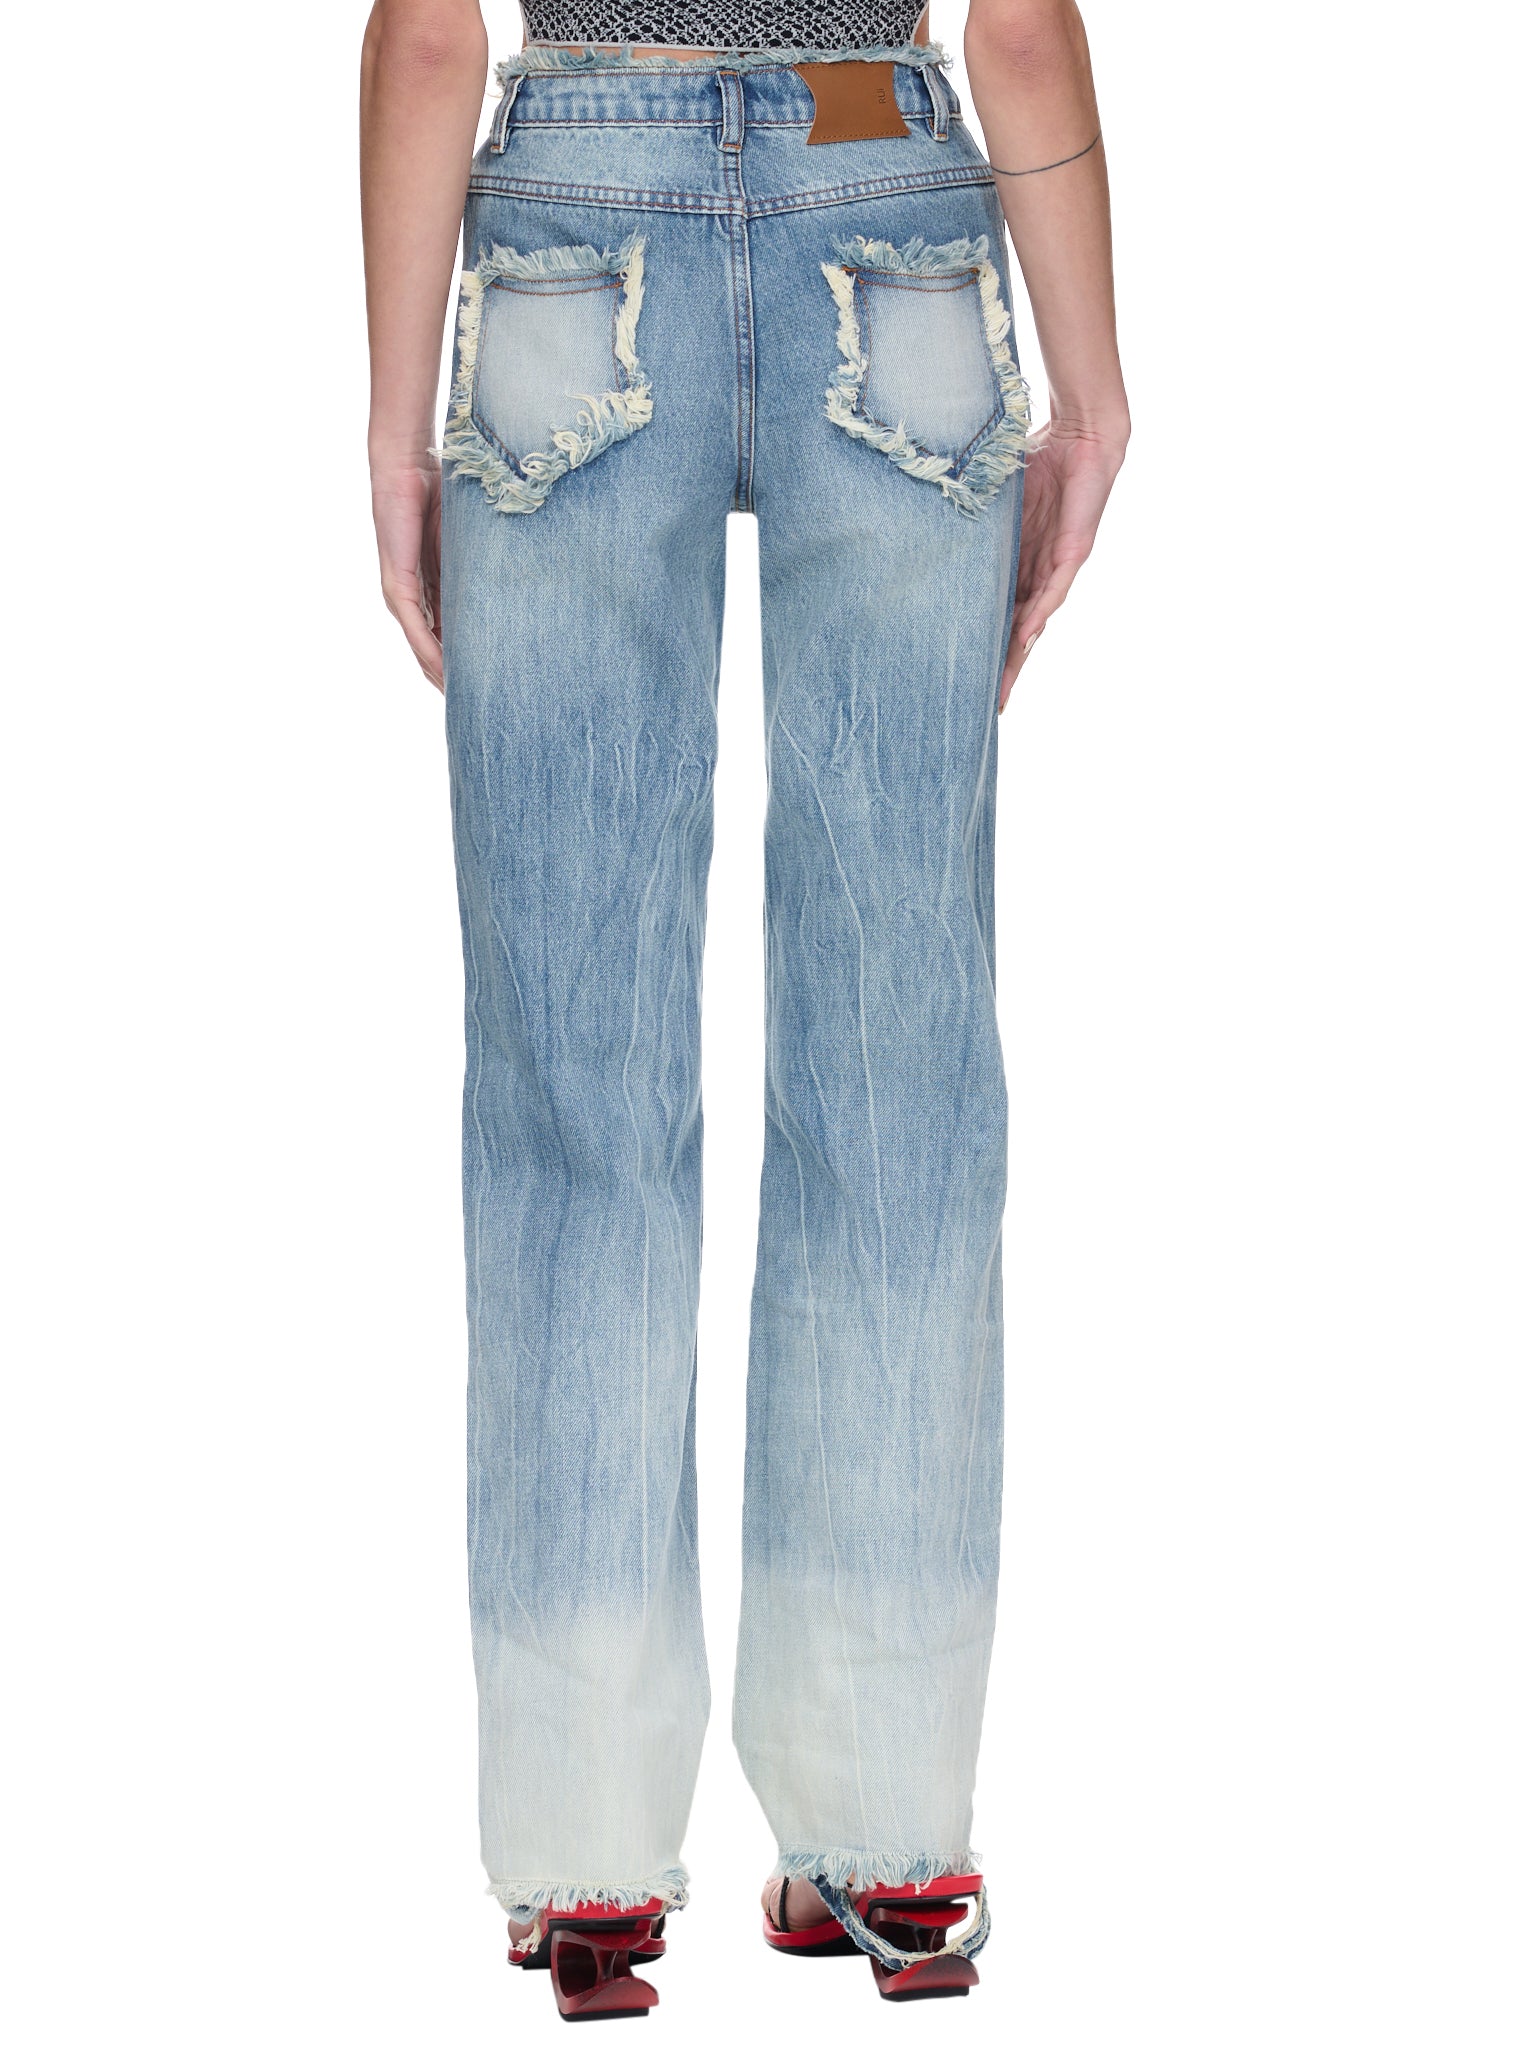 Cut-Out Jeans (RSS23WV10B-BLUE-DENIM)